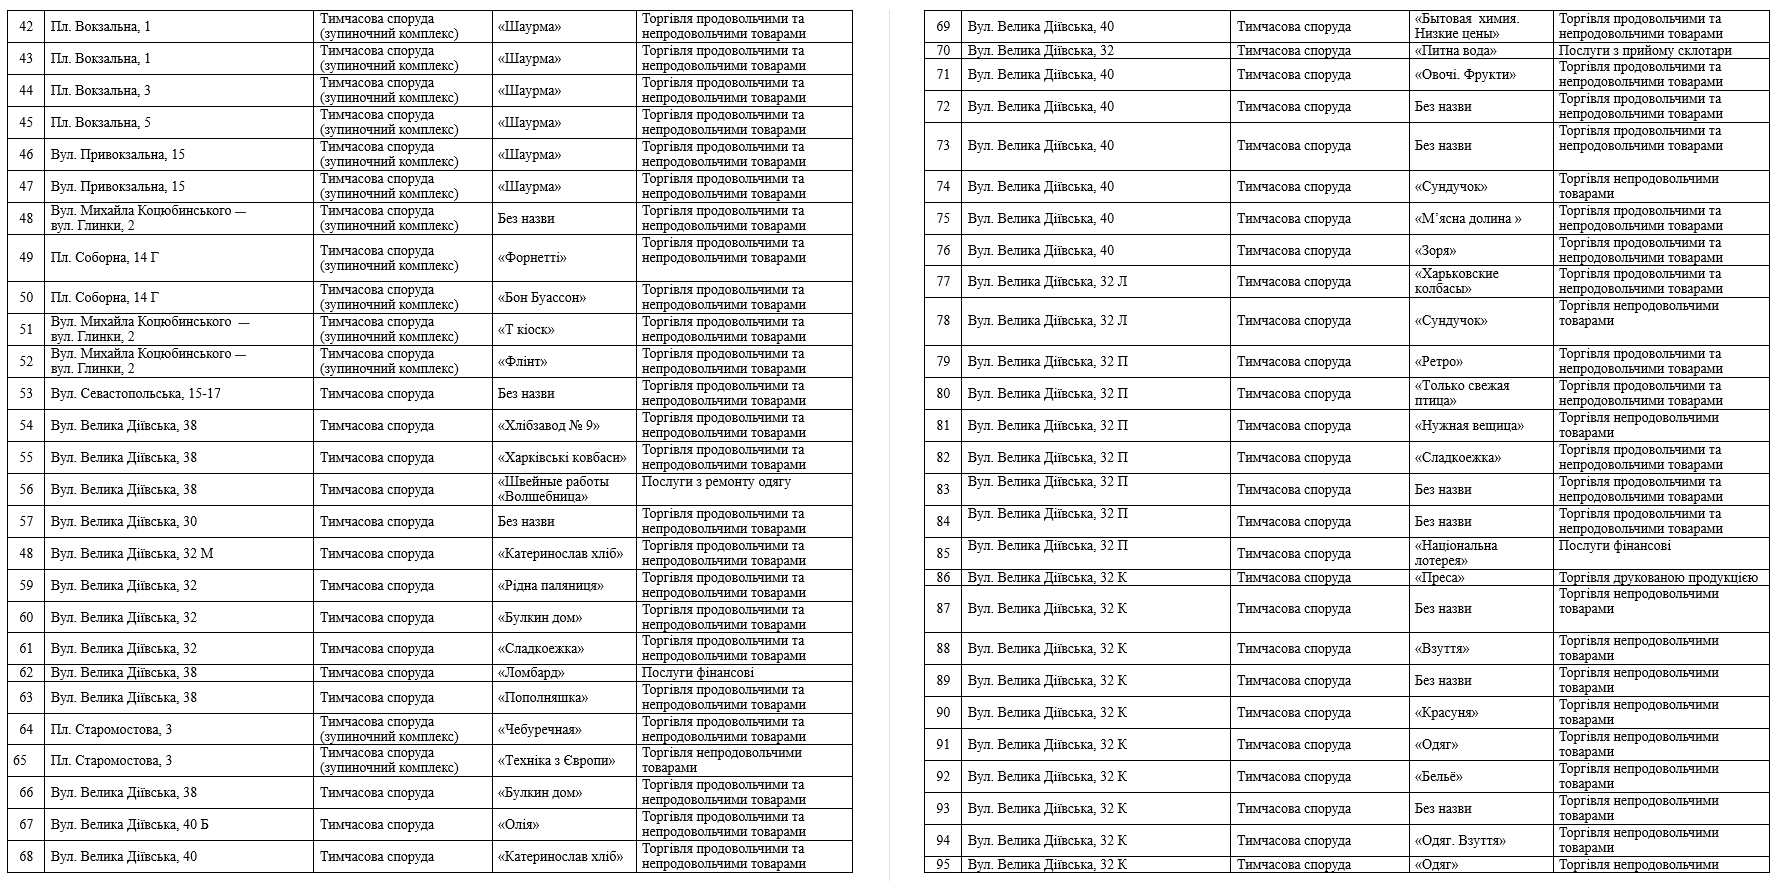 Список временных сооружений, которые демонтируют в Днепре